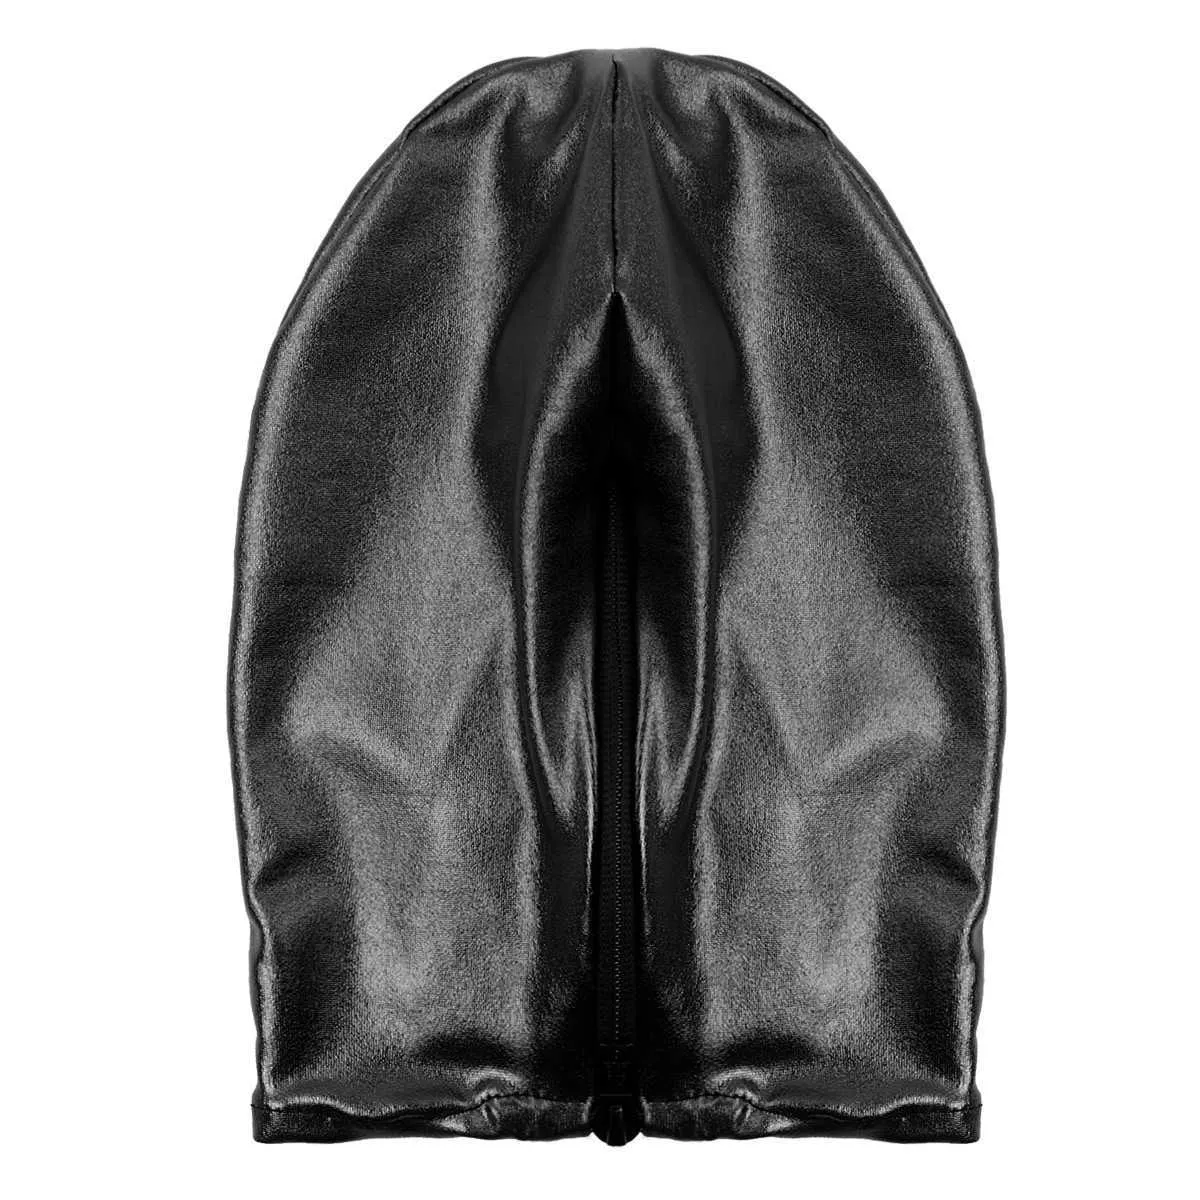 مثير للجنسين الرجال نساء Cosplay Face Mask Lood للعب دور الأدوار اللاتكس اللاتكس المعدني المفتوح فتحة الفم رأس كامل قناع الوجه Q02130148